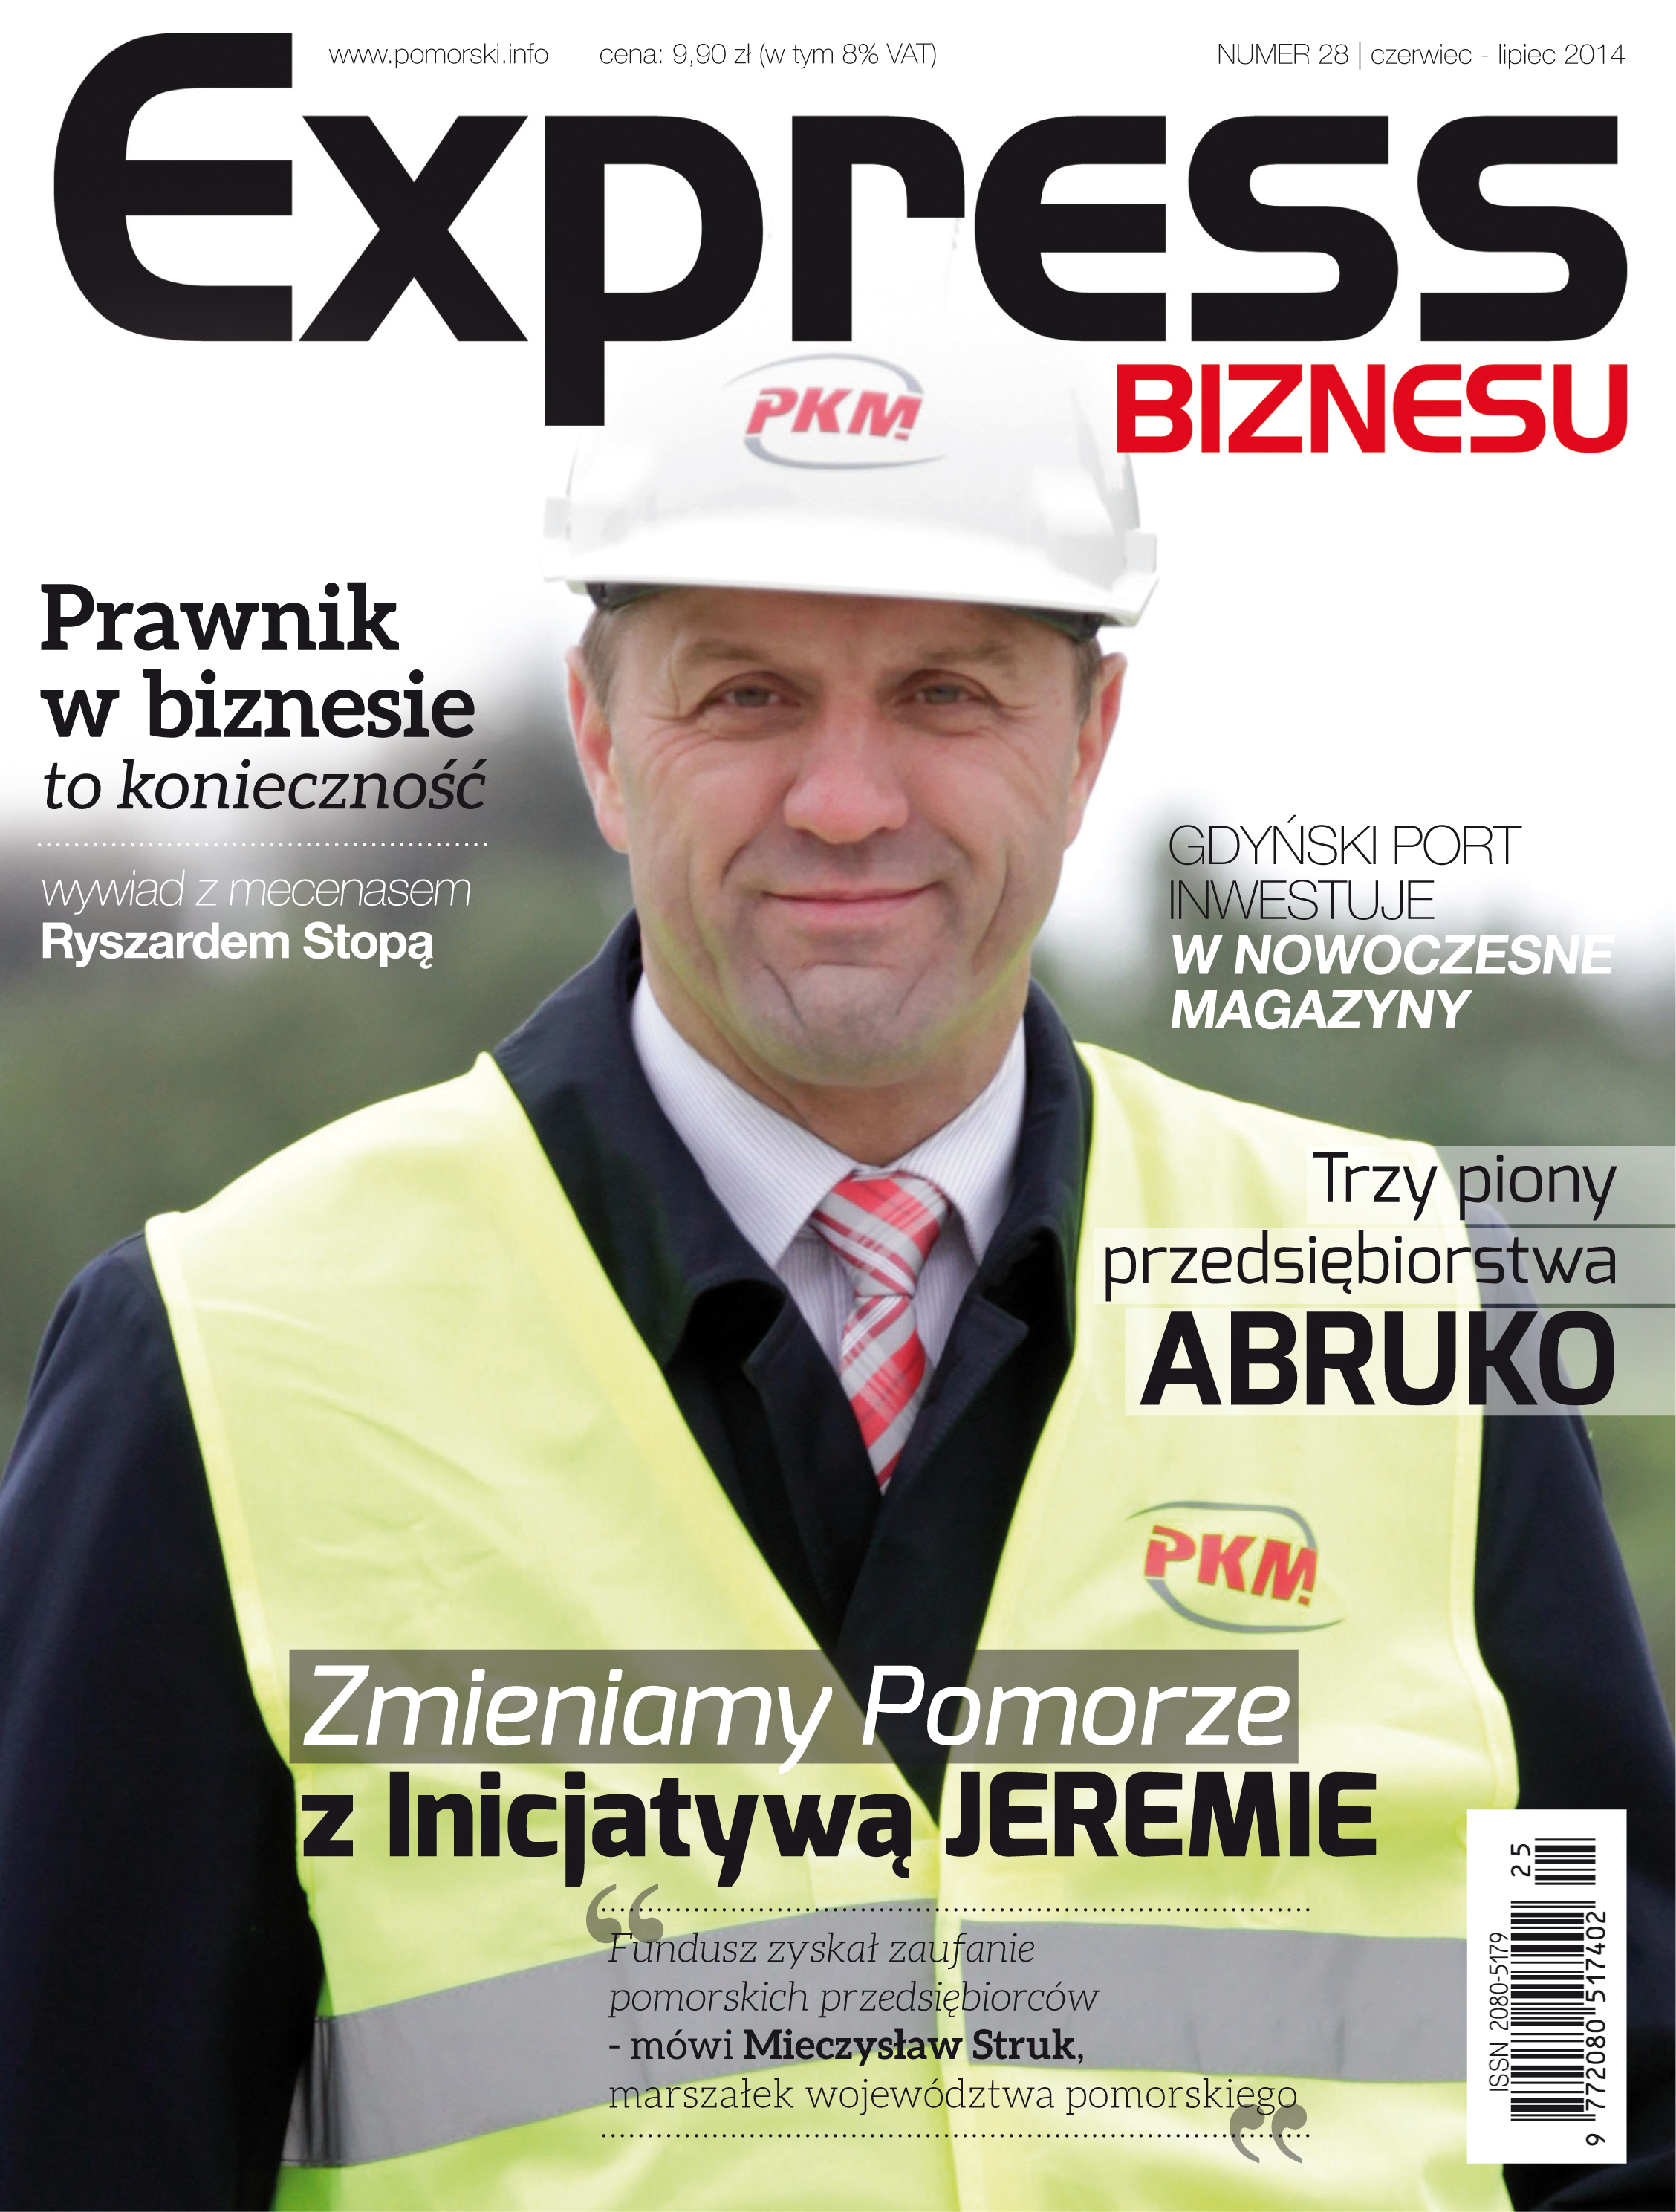 Express Biznesu - nr. 28.pdf